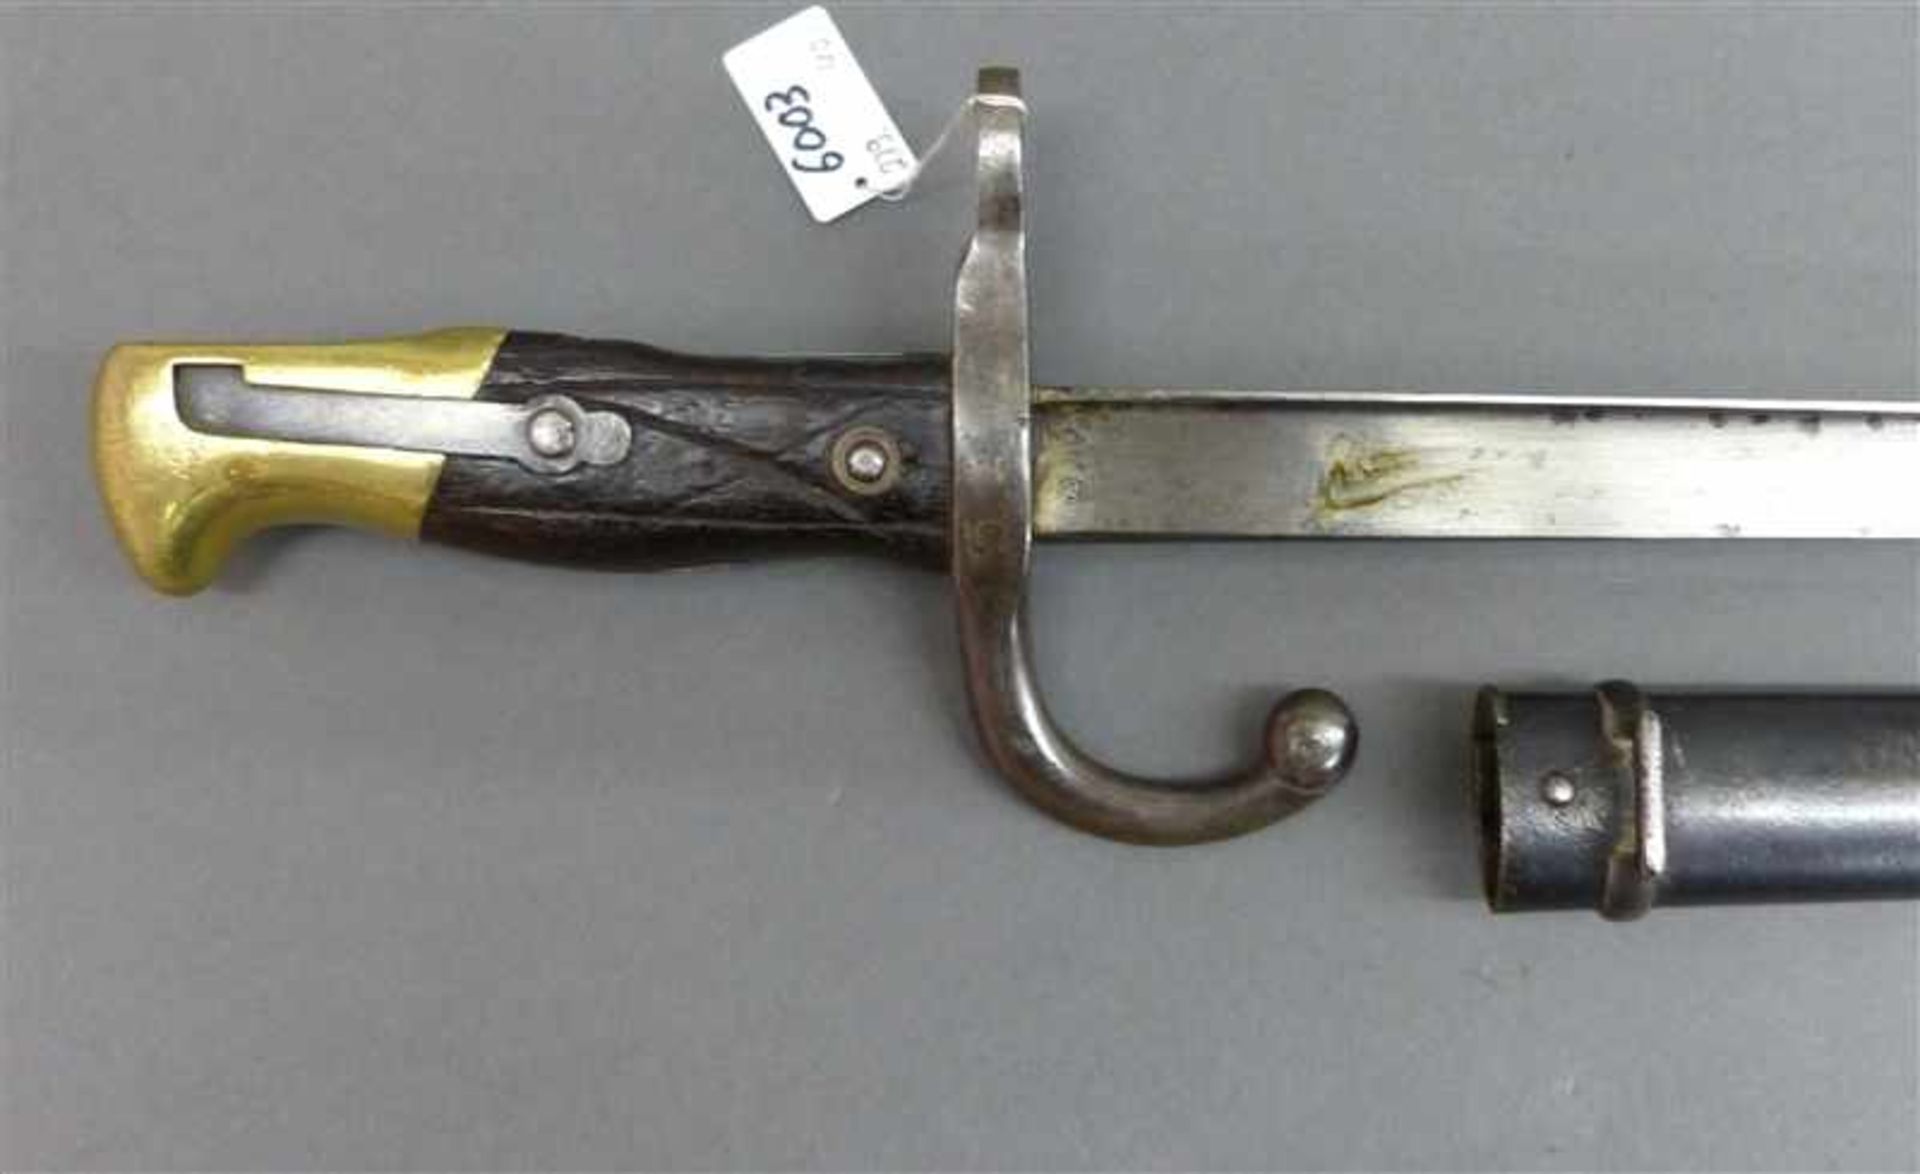 Bajonett Messing/Holz Griff, Stahlklinge, Metallscheide, No. 8079, l 66 cm,